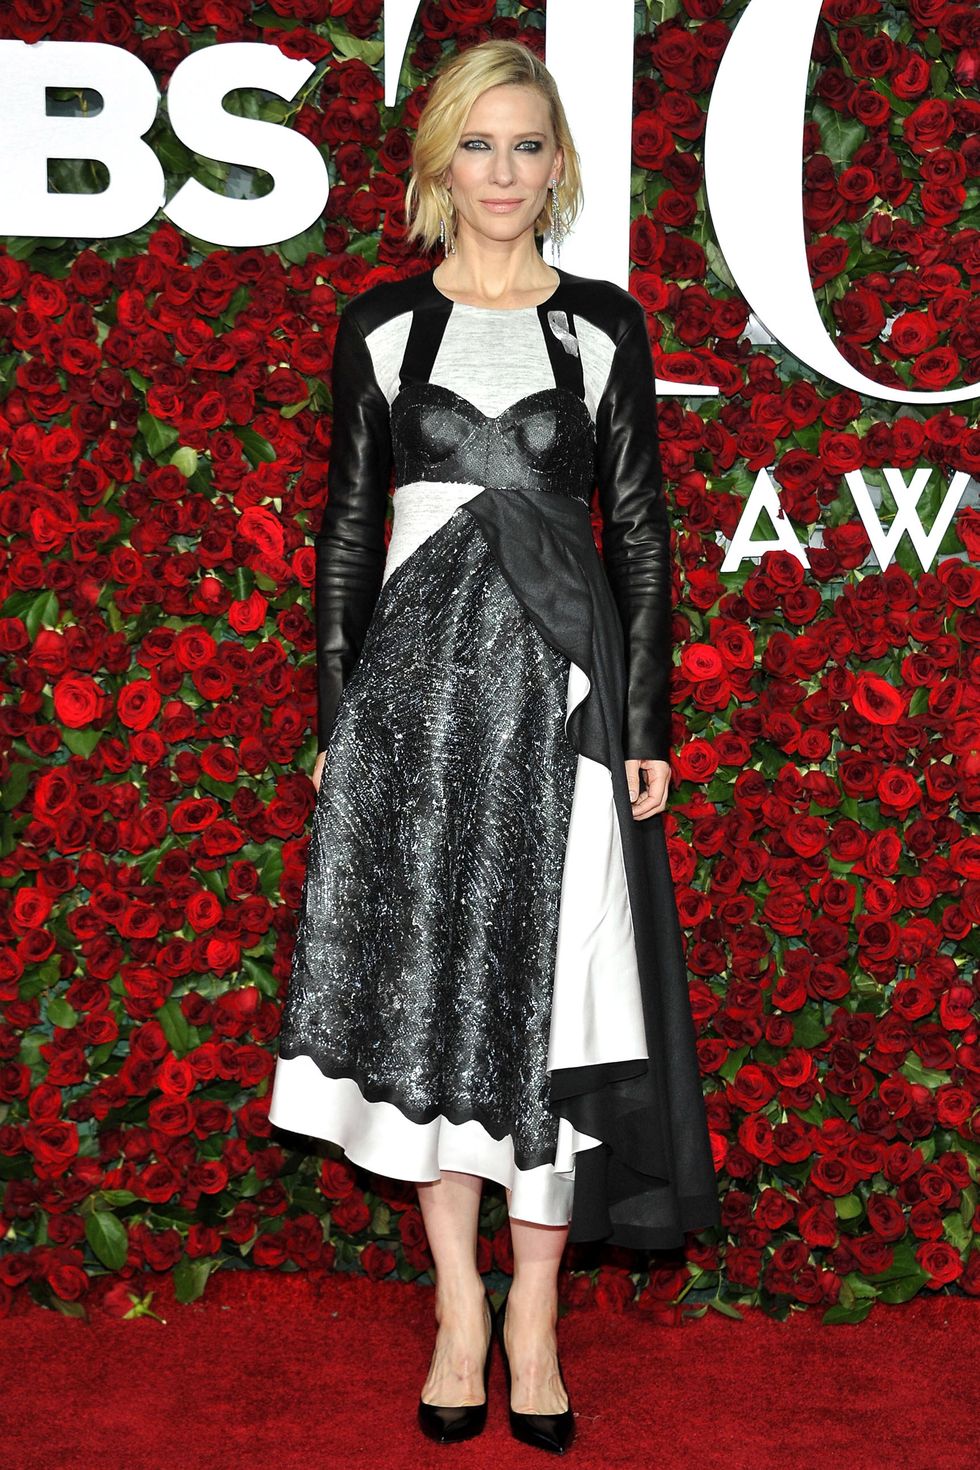 Tony Awards 2016, Tony Awards red carpet, Cate Blanchett, Lupita Nyong'o, Michelle williams